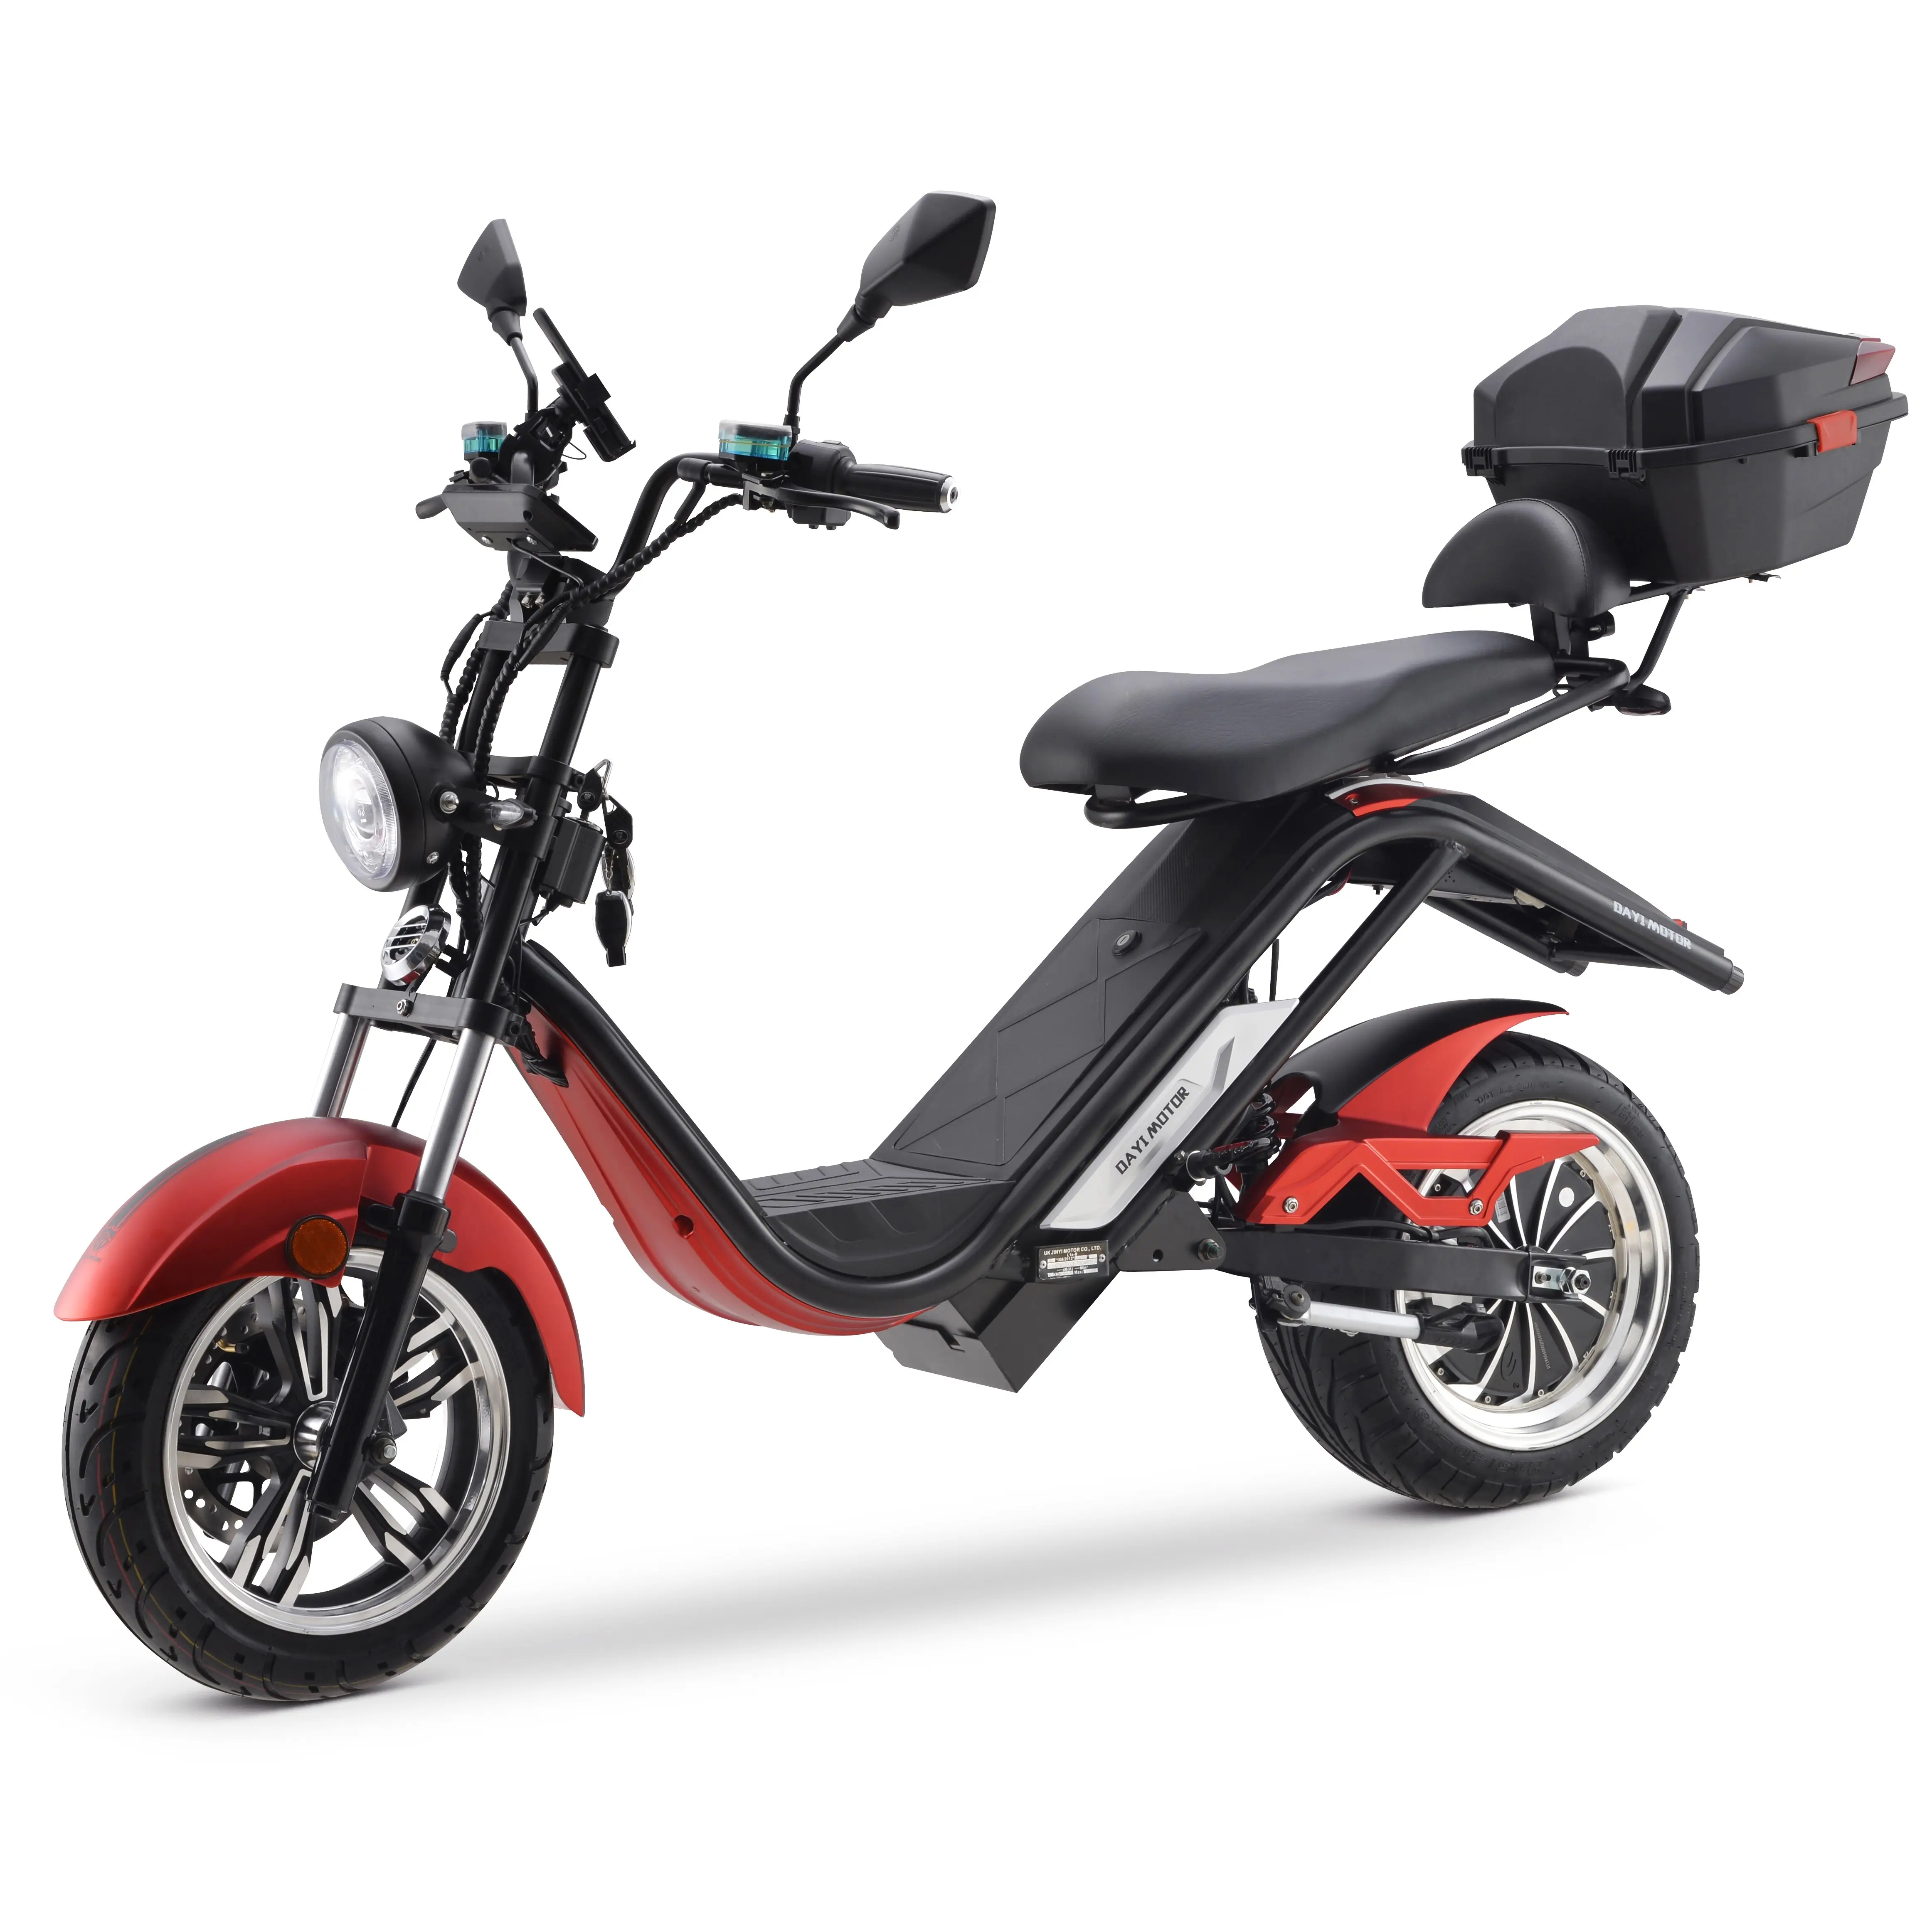 4000w Hot Sale Erwachsene Offroad Elektromotor rad schnelle elektrische Erwachsenen Motorrad Motorroller Kick Play Motorräder